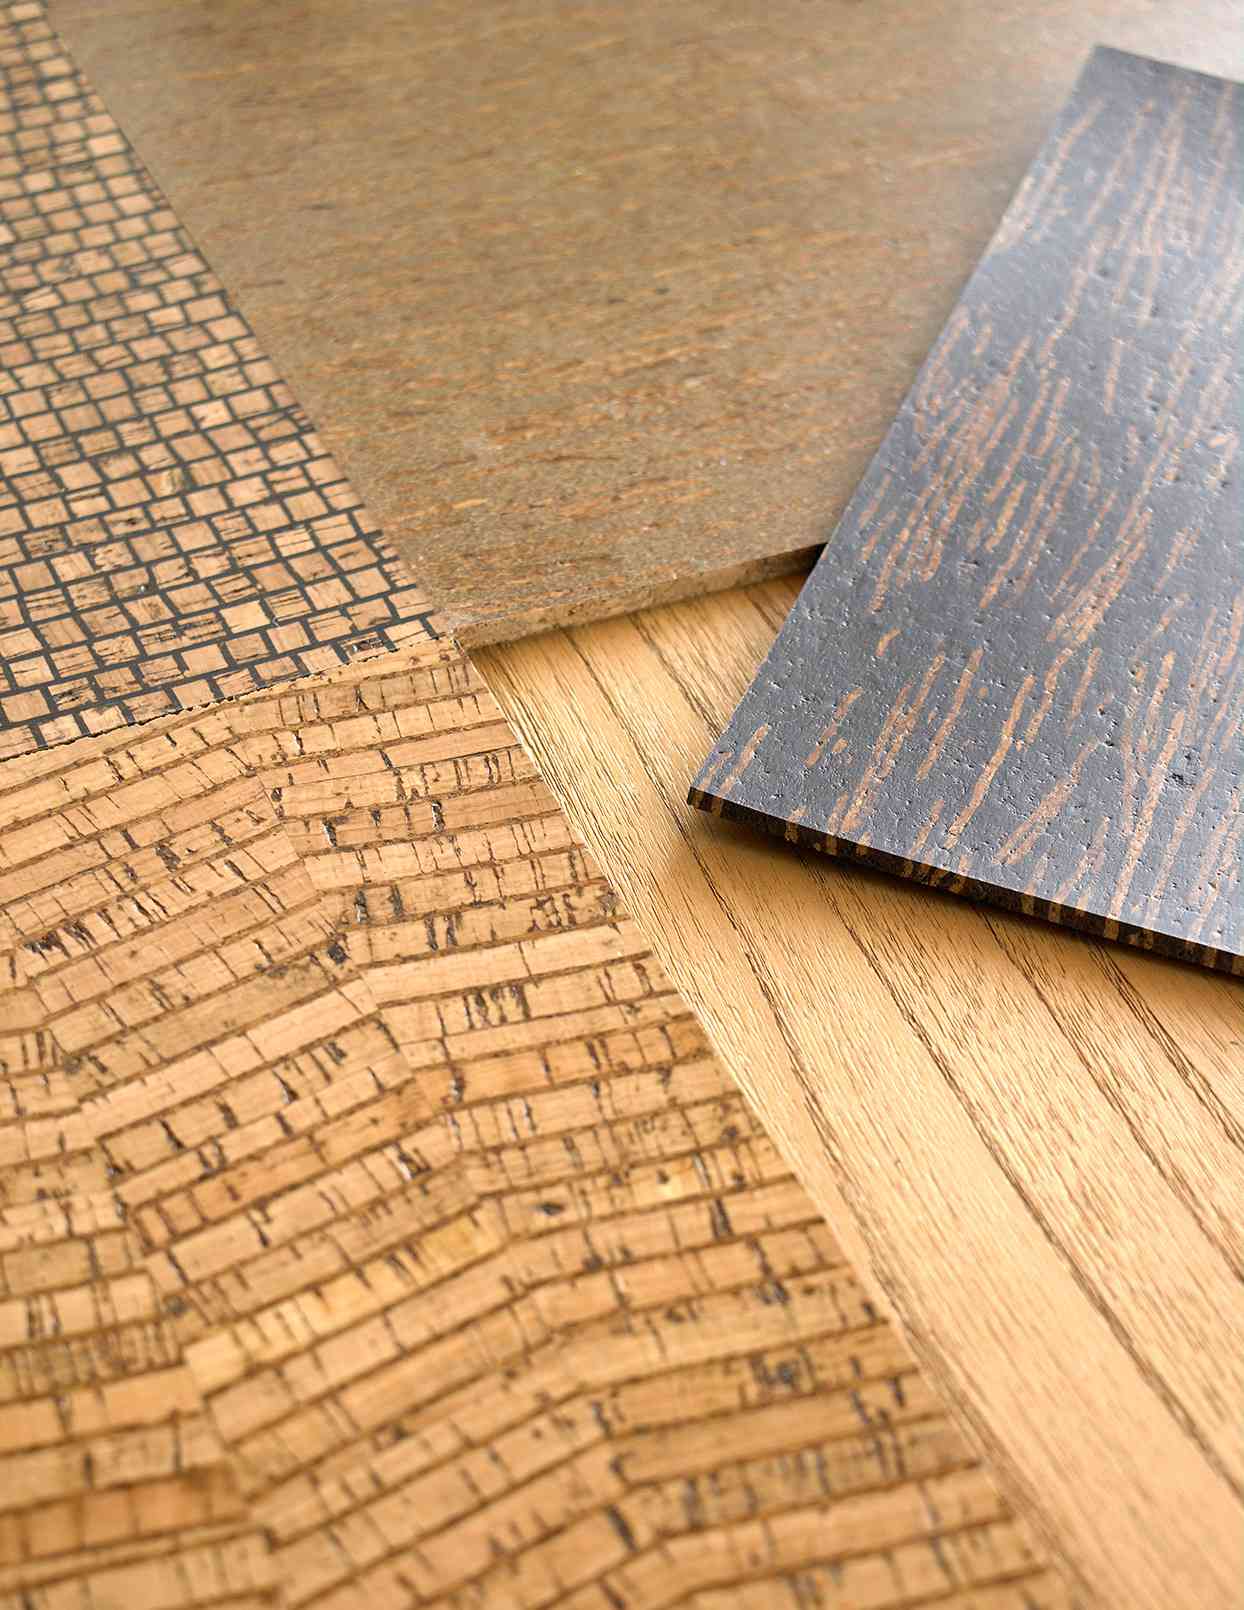 detail cork flooring tiles planks samples